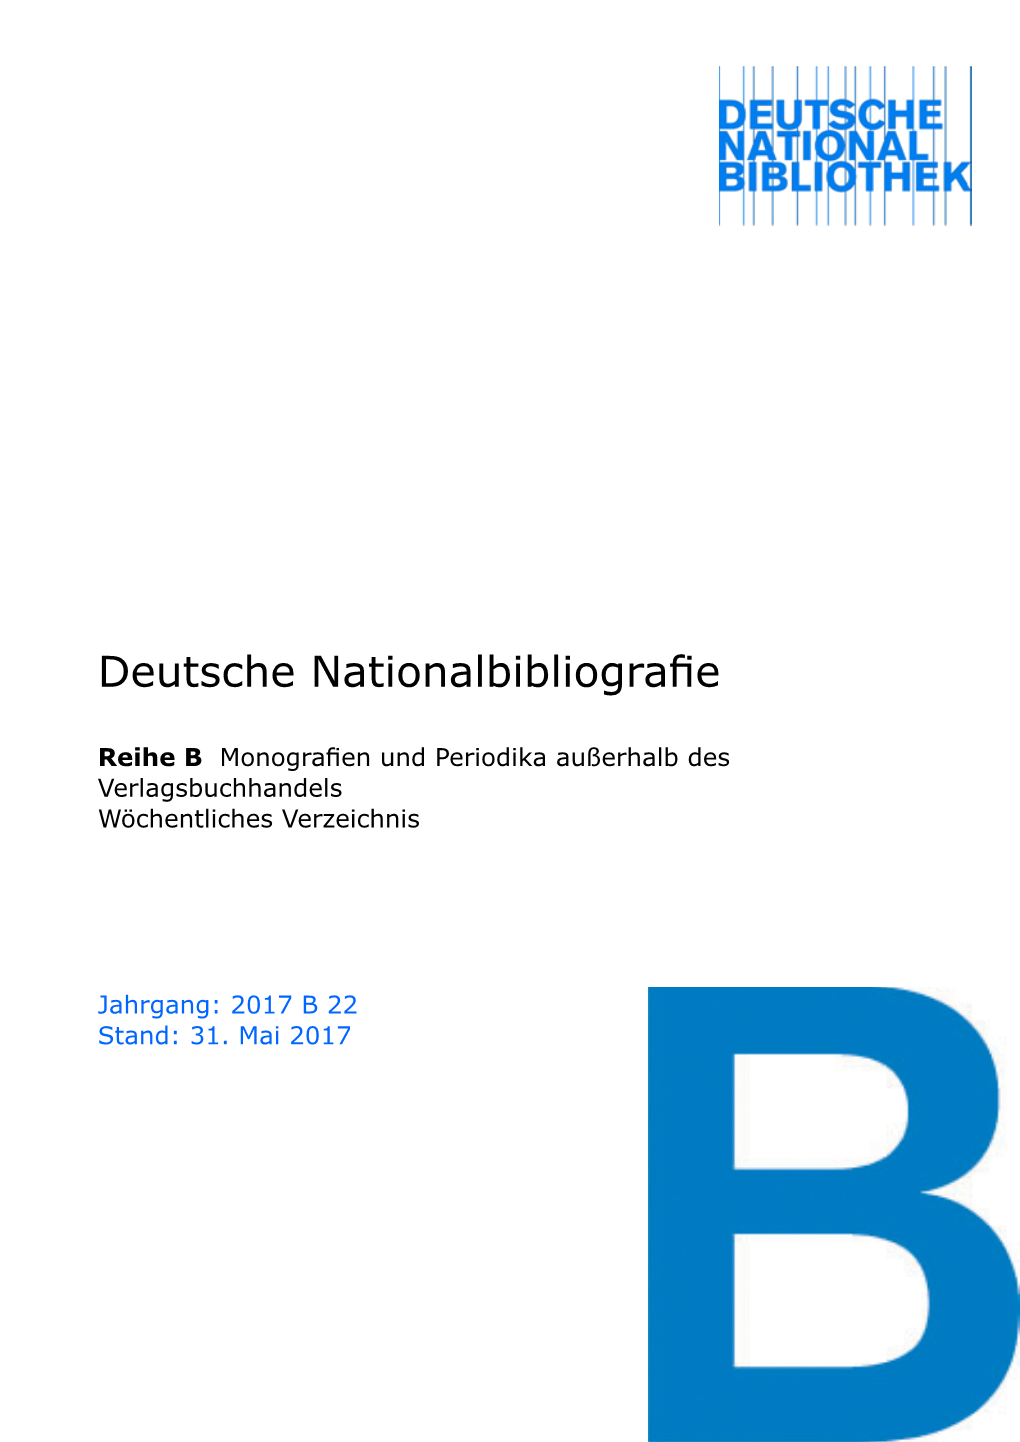 Deutsche Nationalbibliografie 2017 B 22